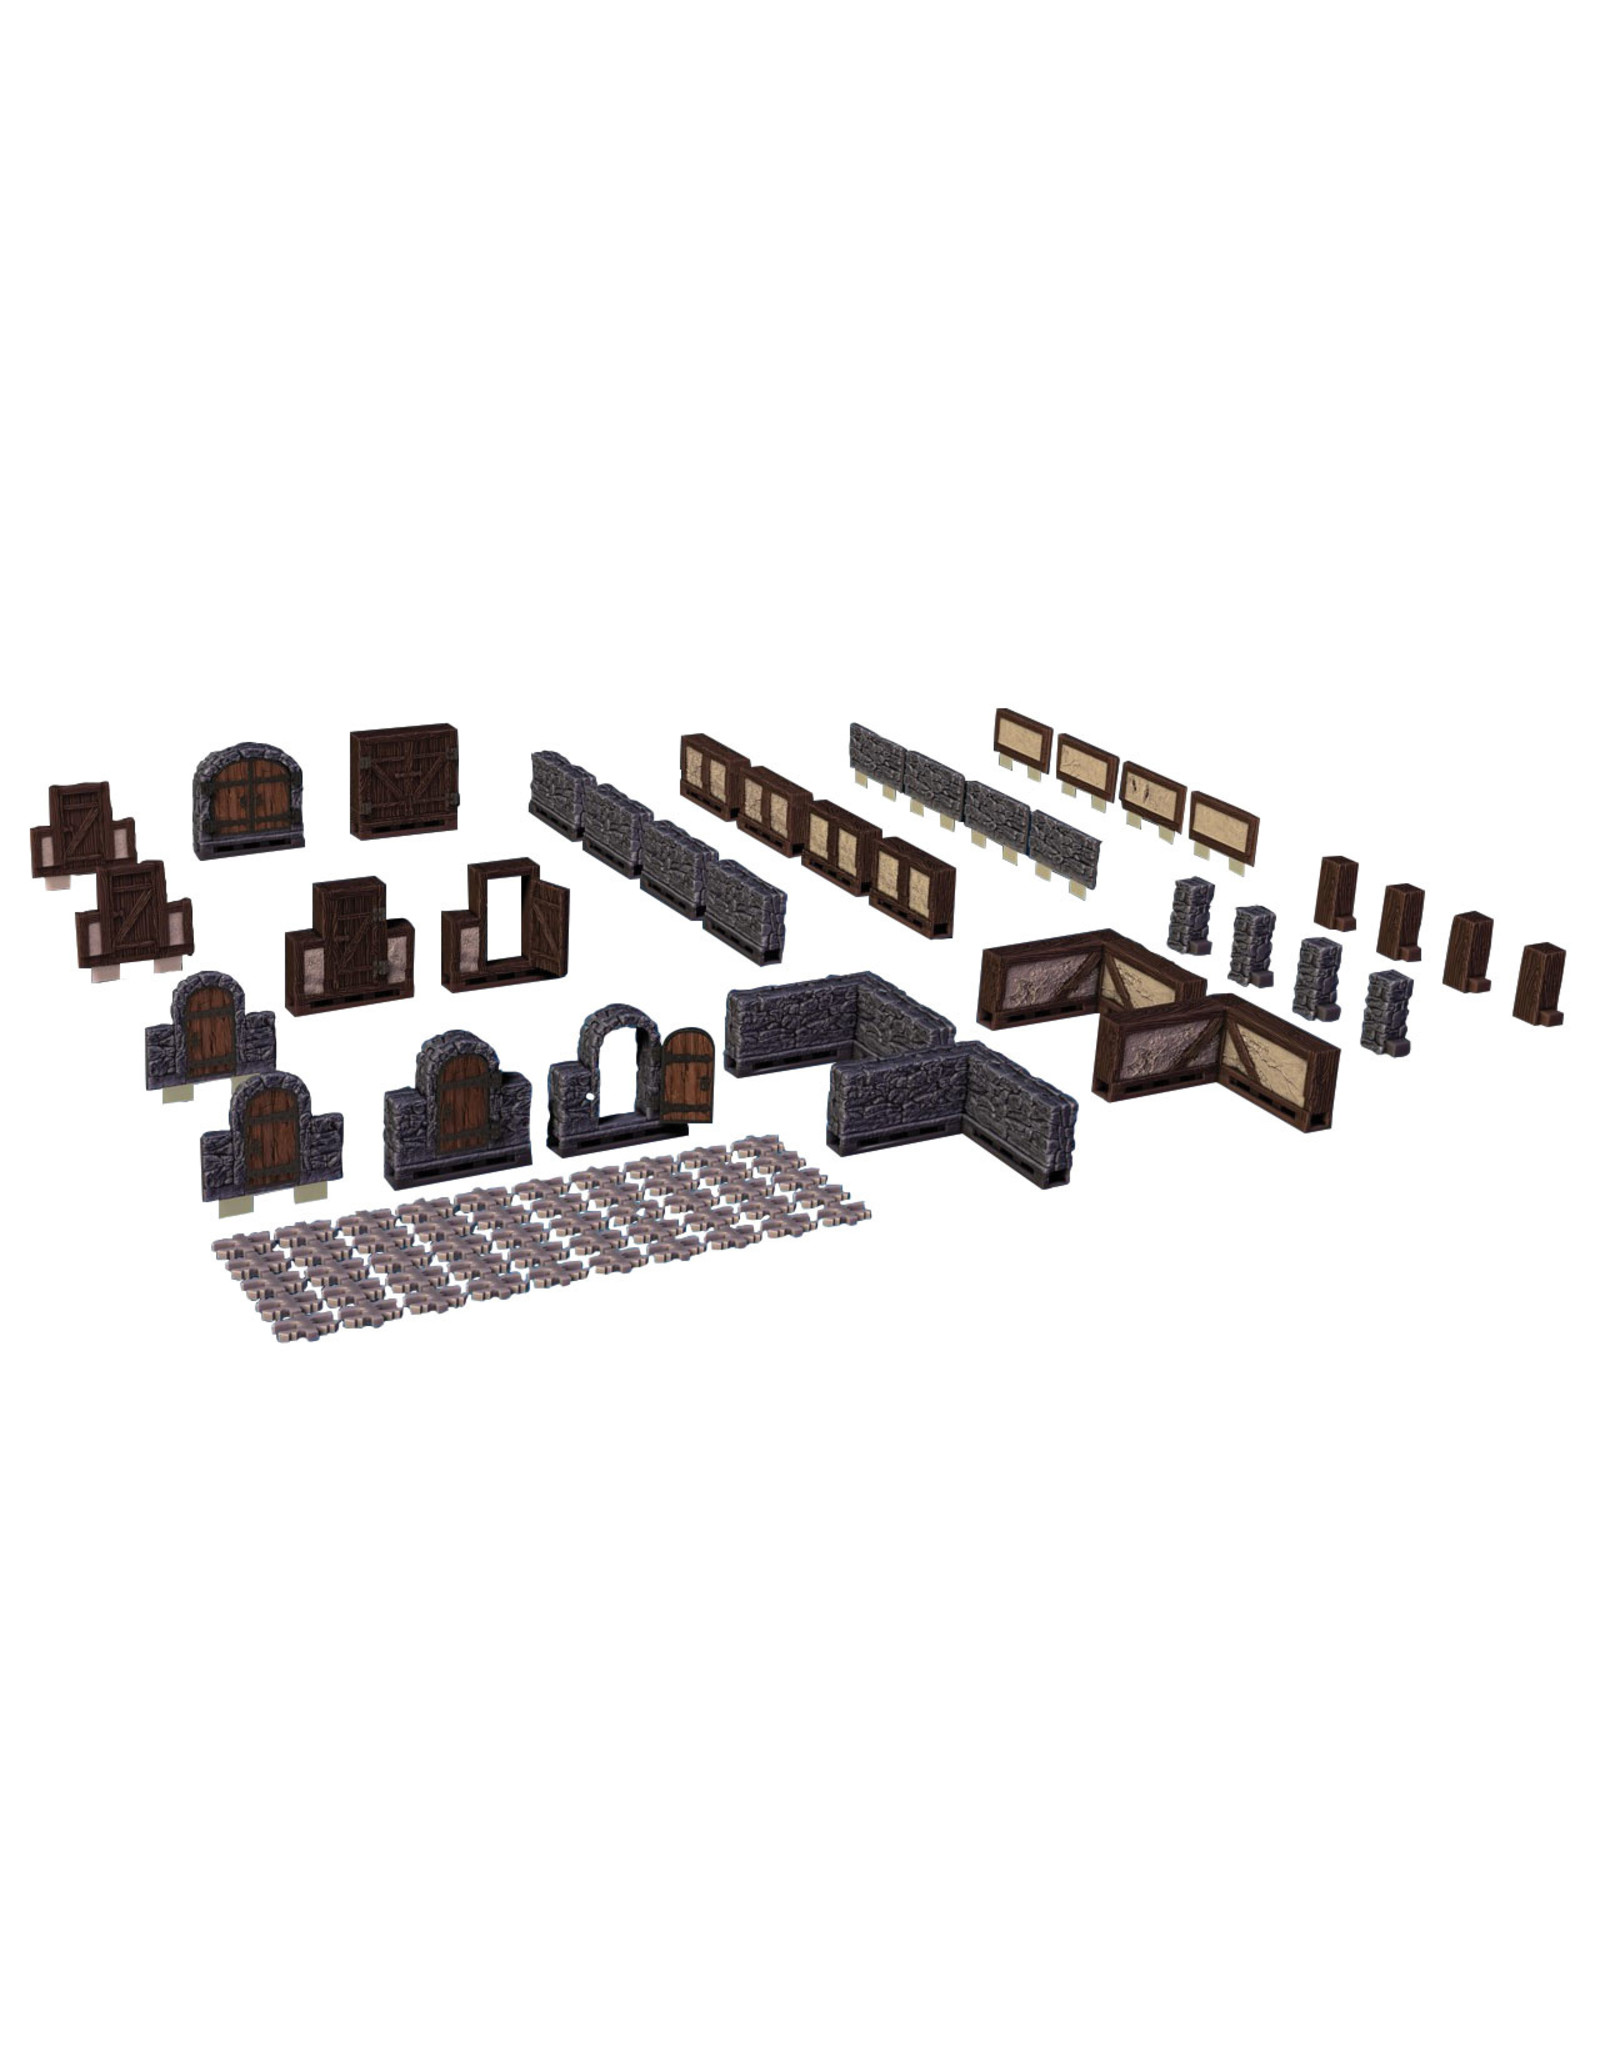 Warlock Tiles - Expansion Box I